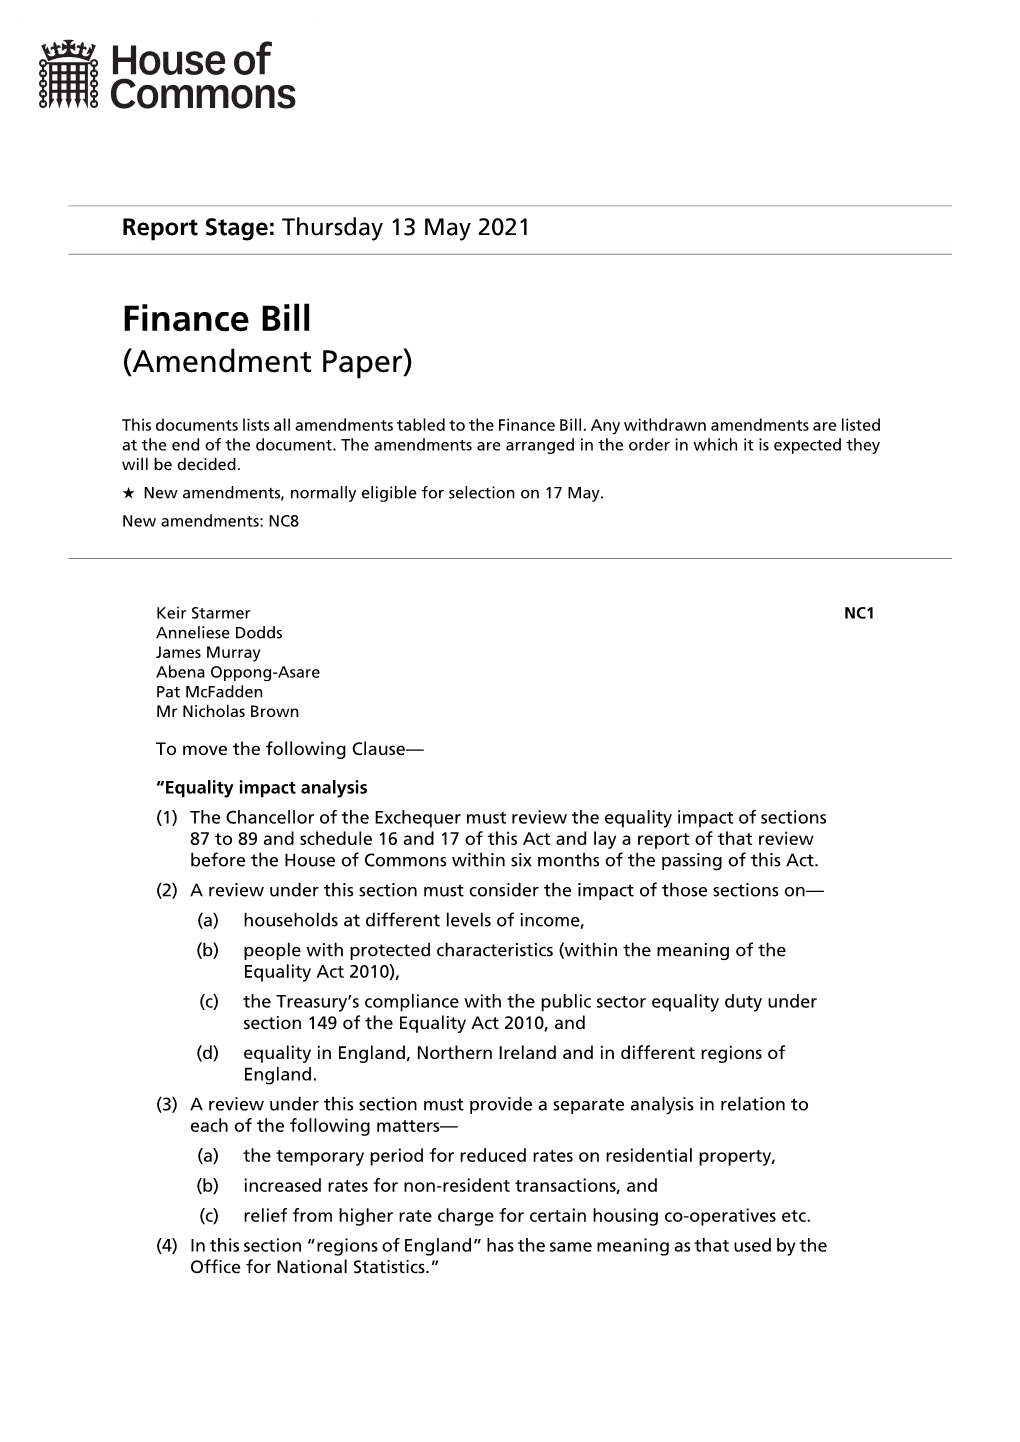 Finance Bill (Amendment Paper)